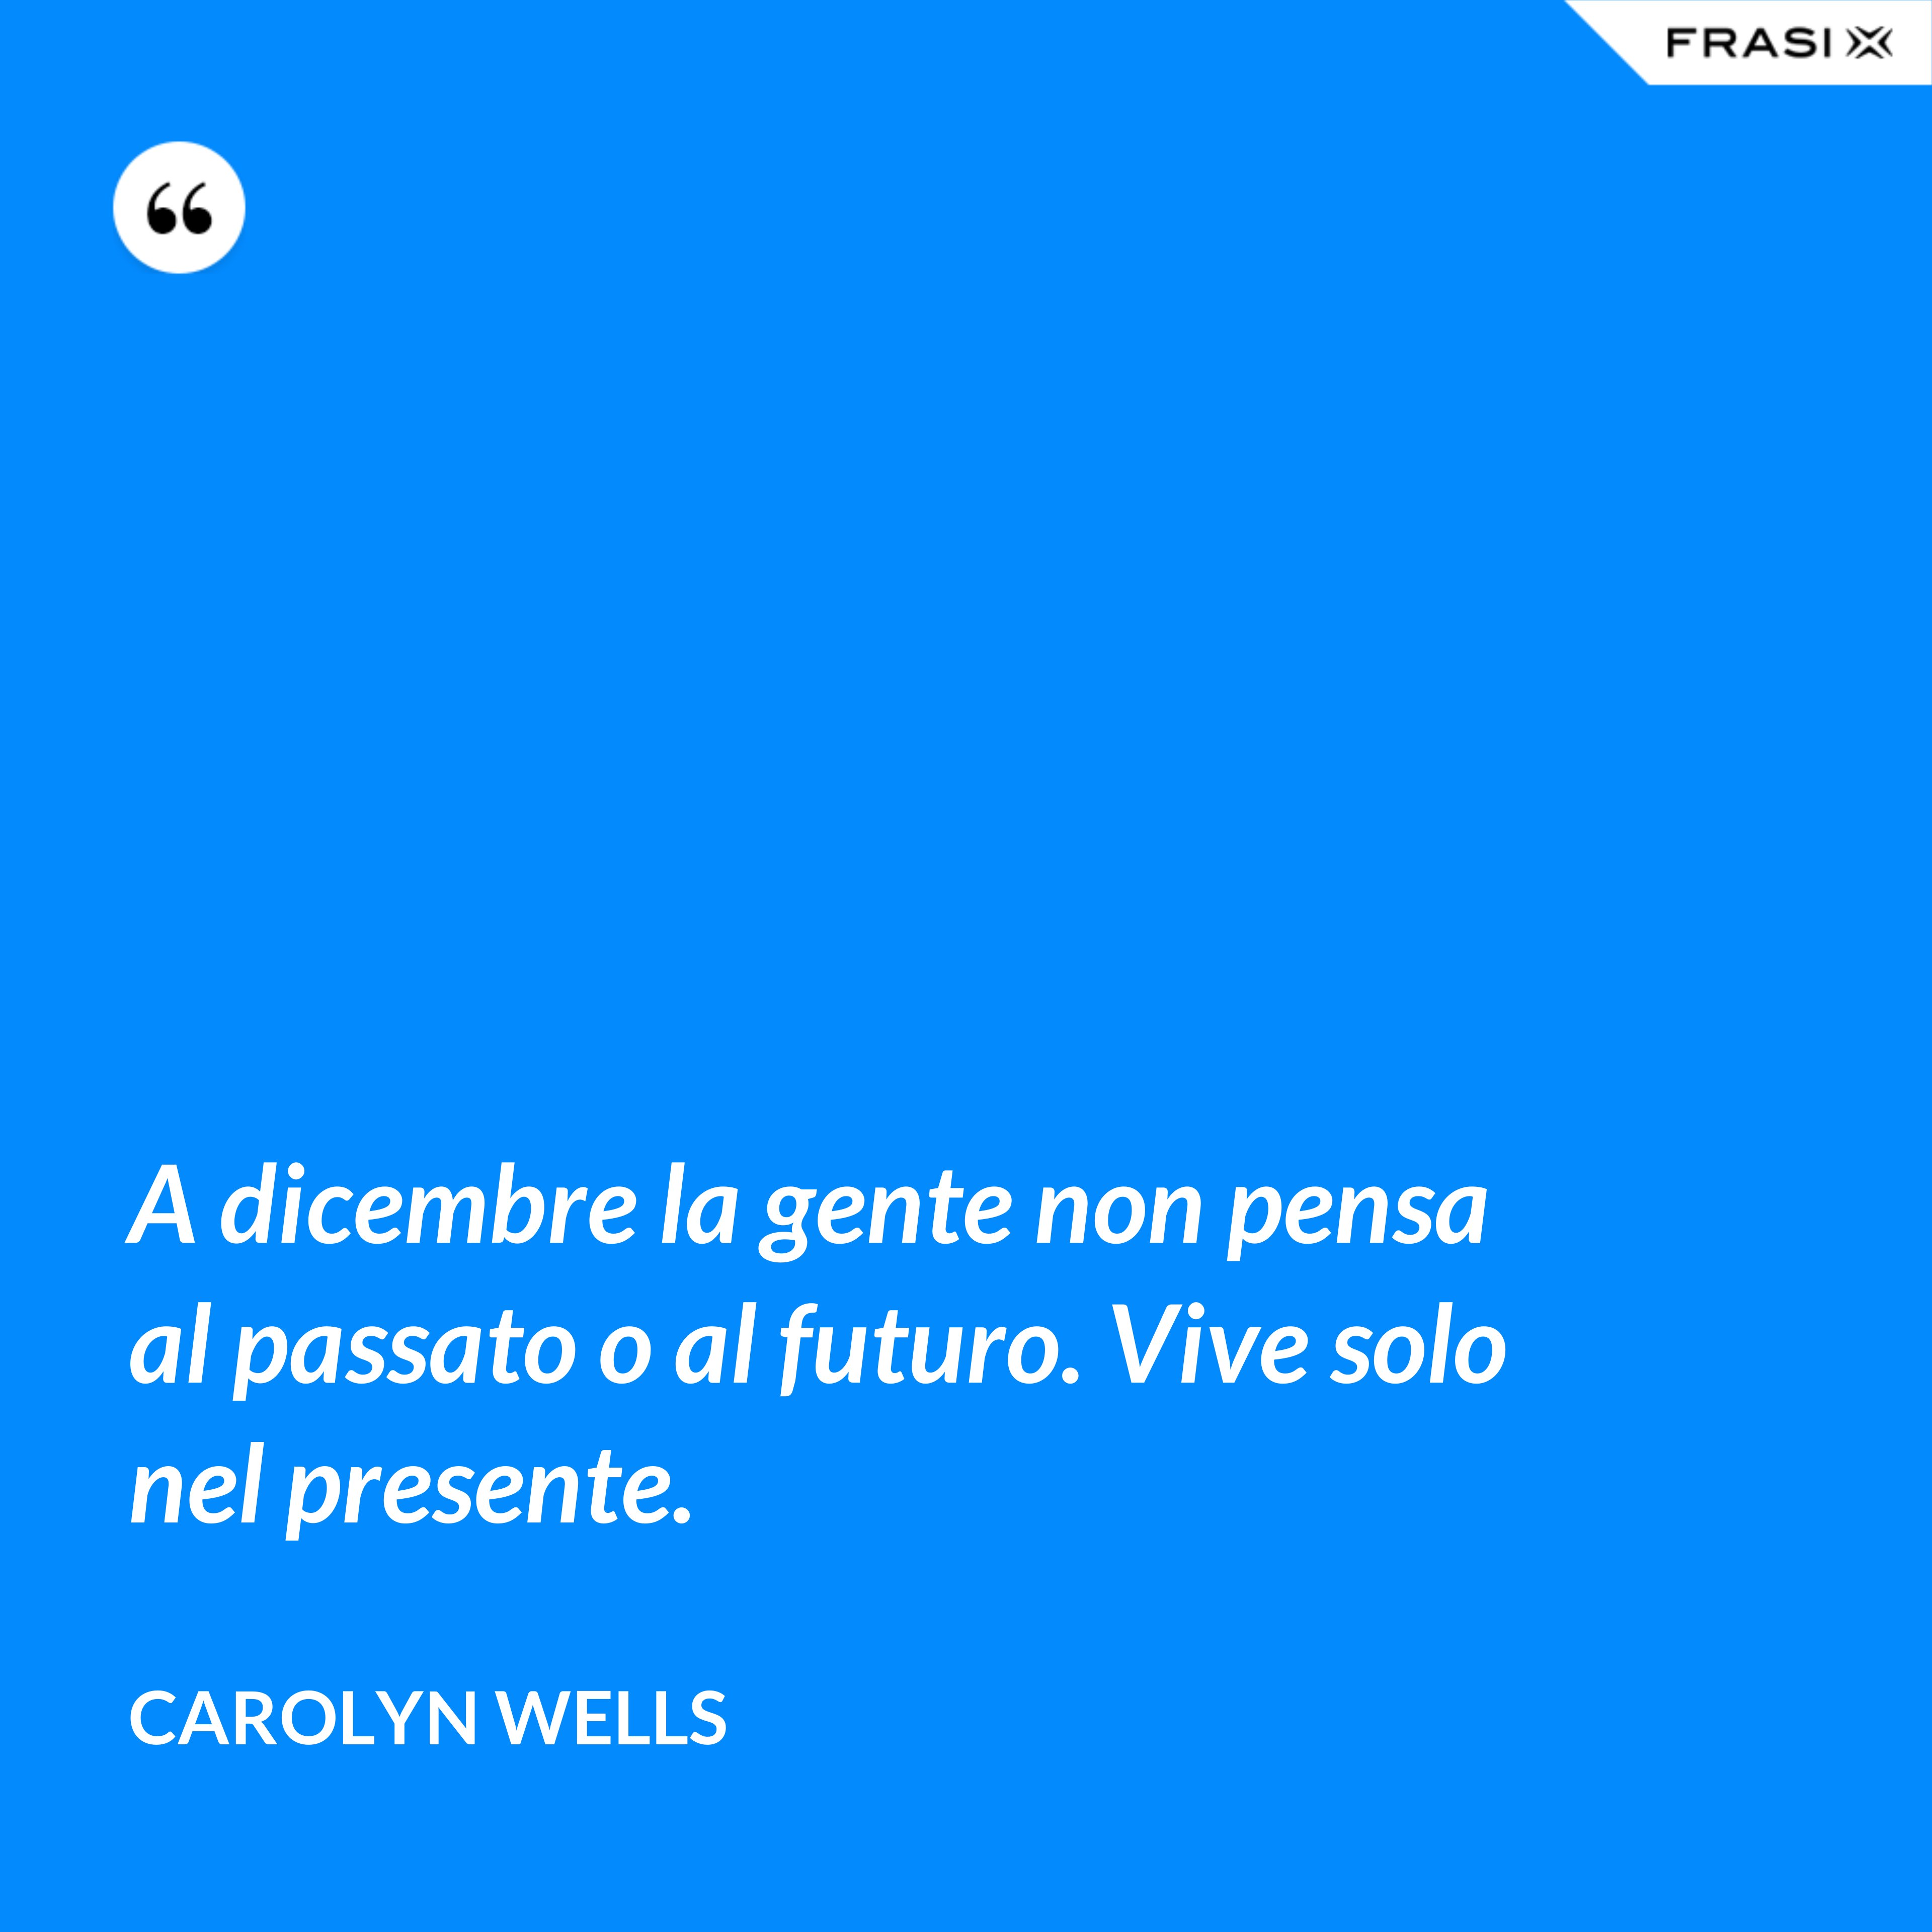 A dicembre la gente non pensa al passato o al futuro. Vive solo nel presente. - Carolyn Wells